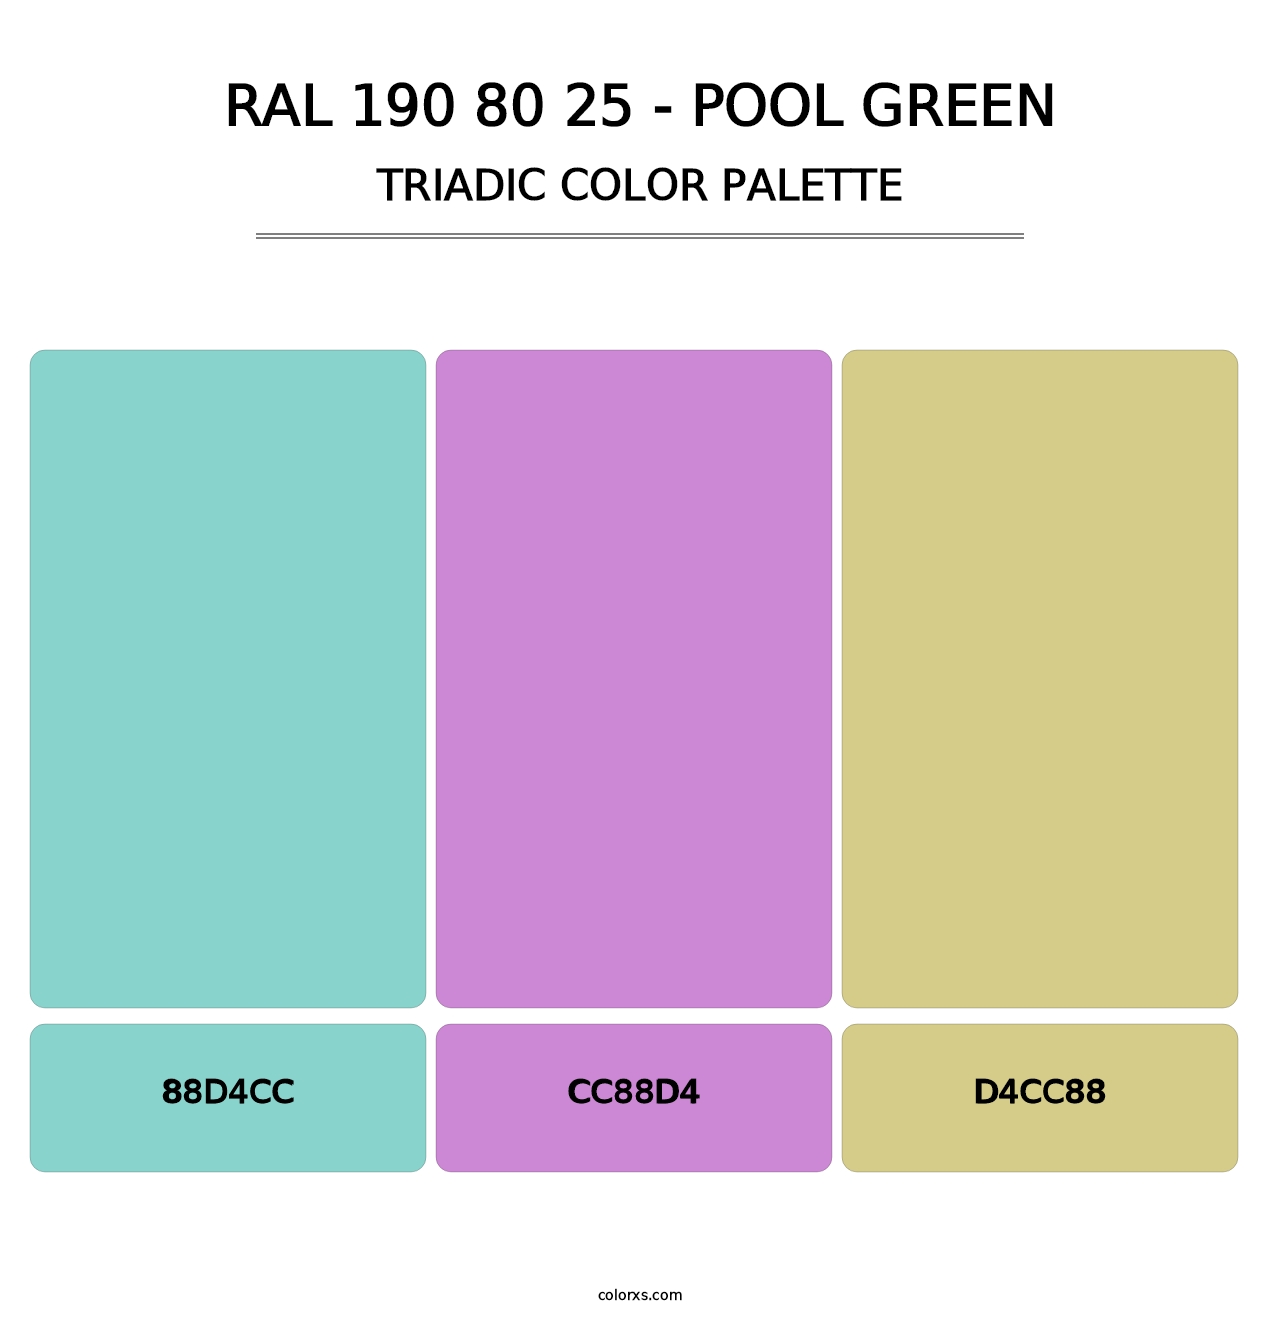 RAL 190 80 25 - Pool Green - Triadic Color Palette